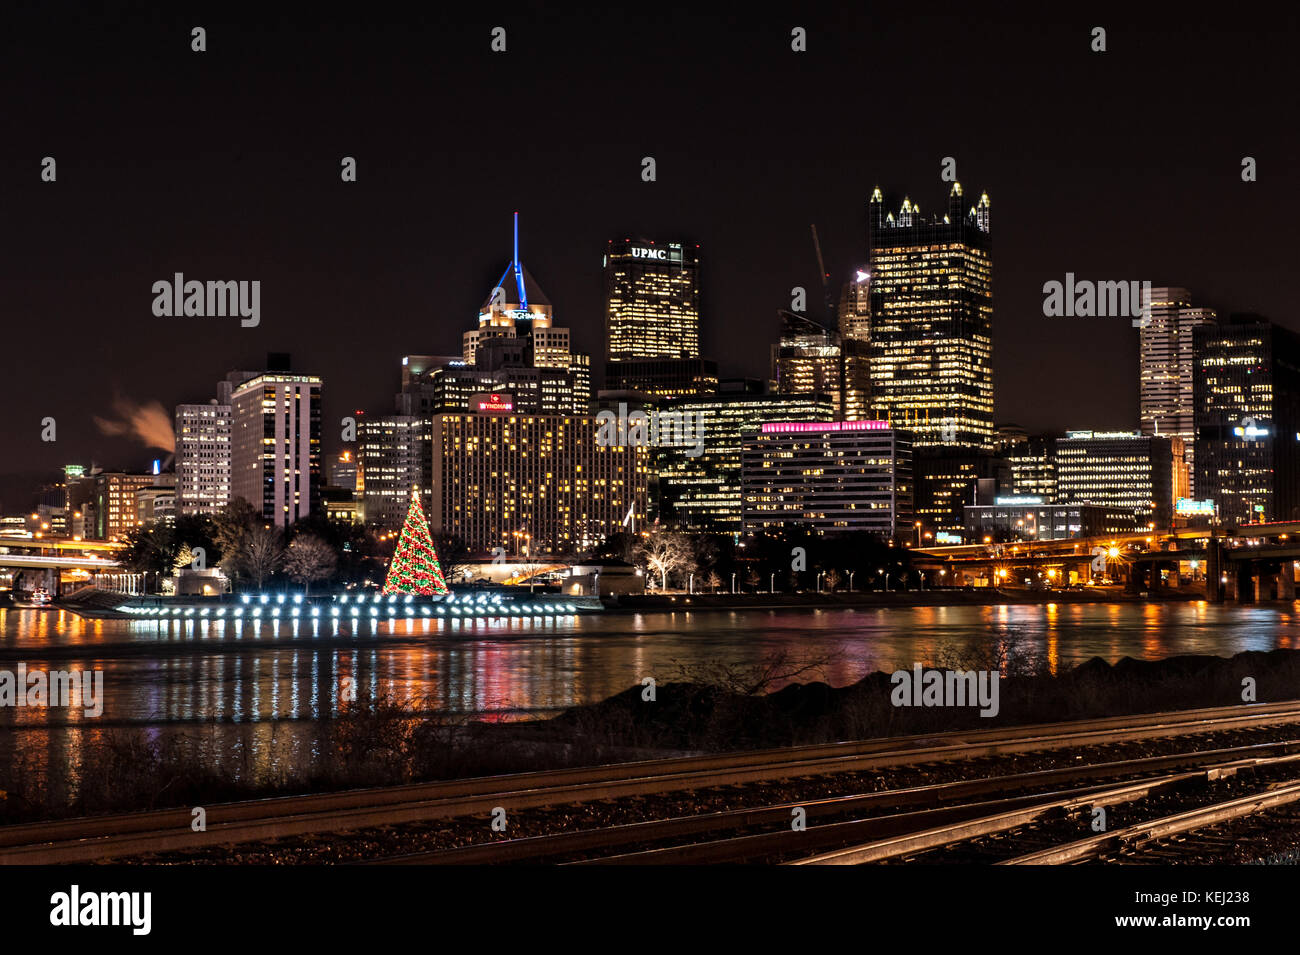 Pittsburgh horizonte se iluminan durante la noche, varios rascacielos, árbol de navidad y el río allegheny waterfront en Pennsylvania, EE.UU. Foto de stock